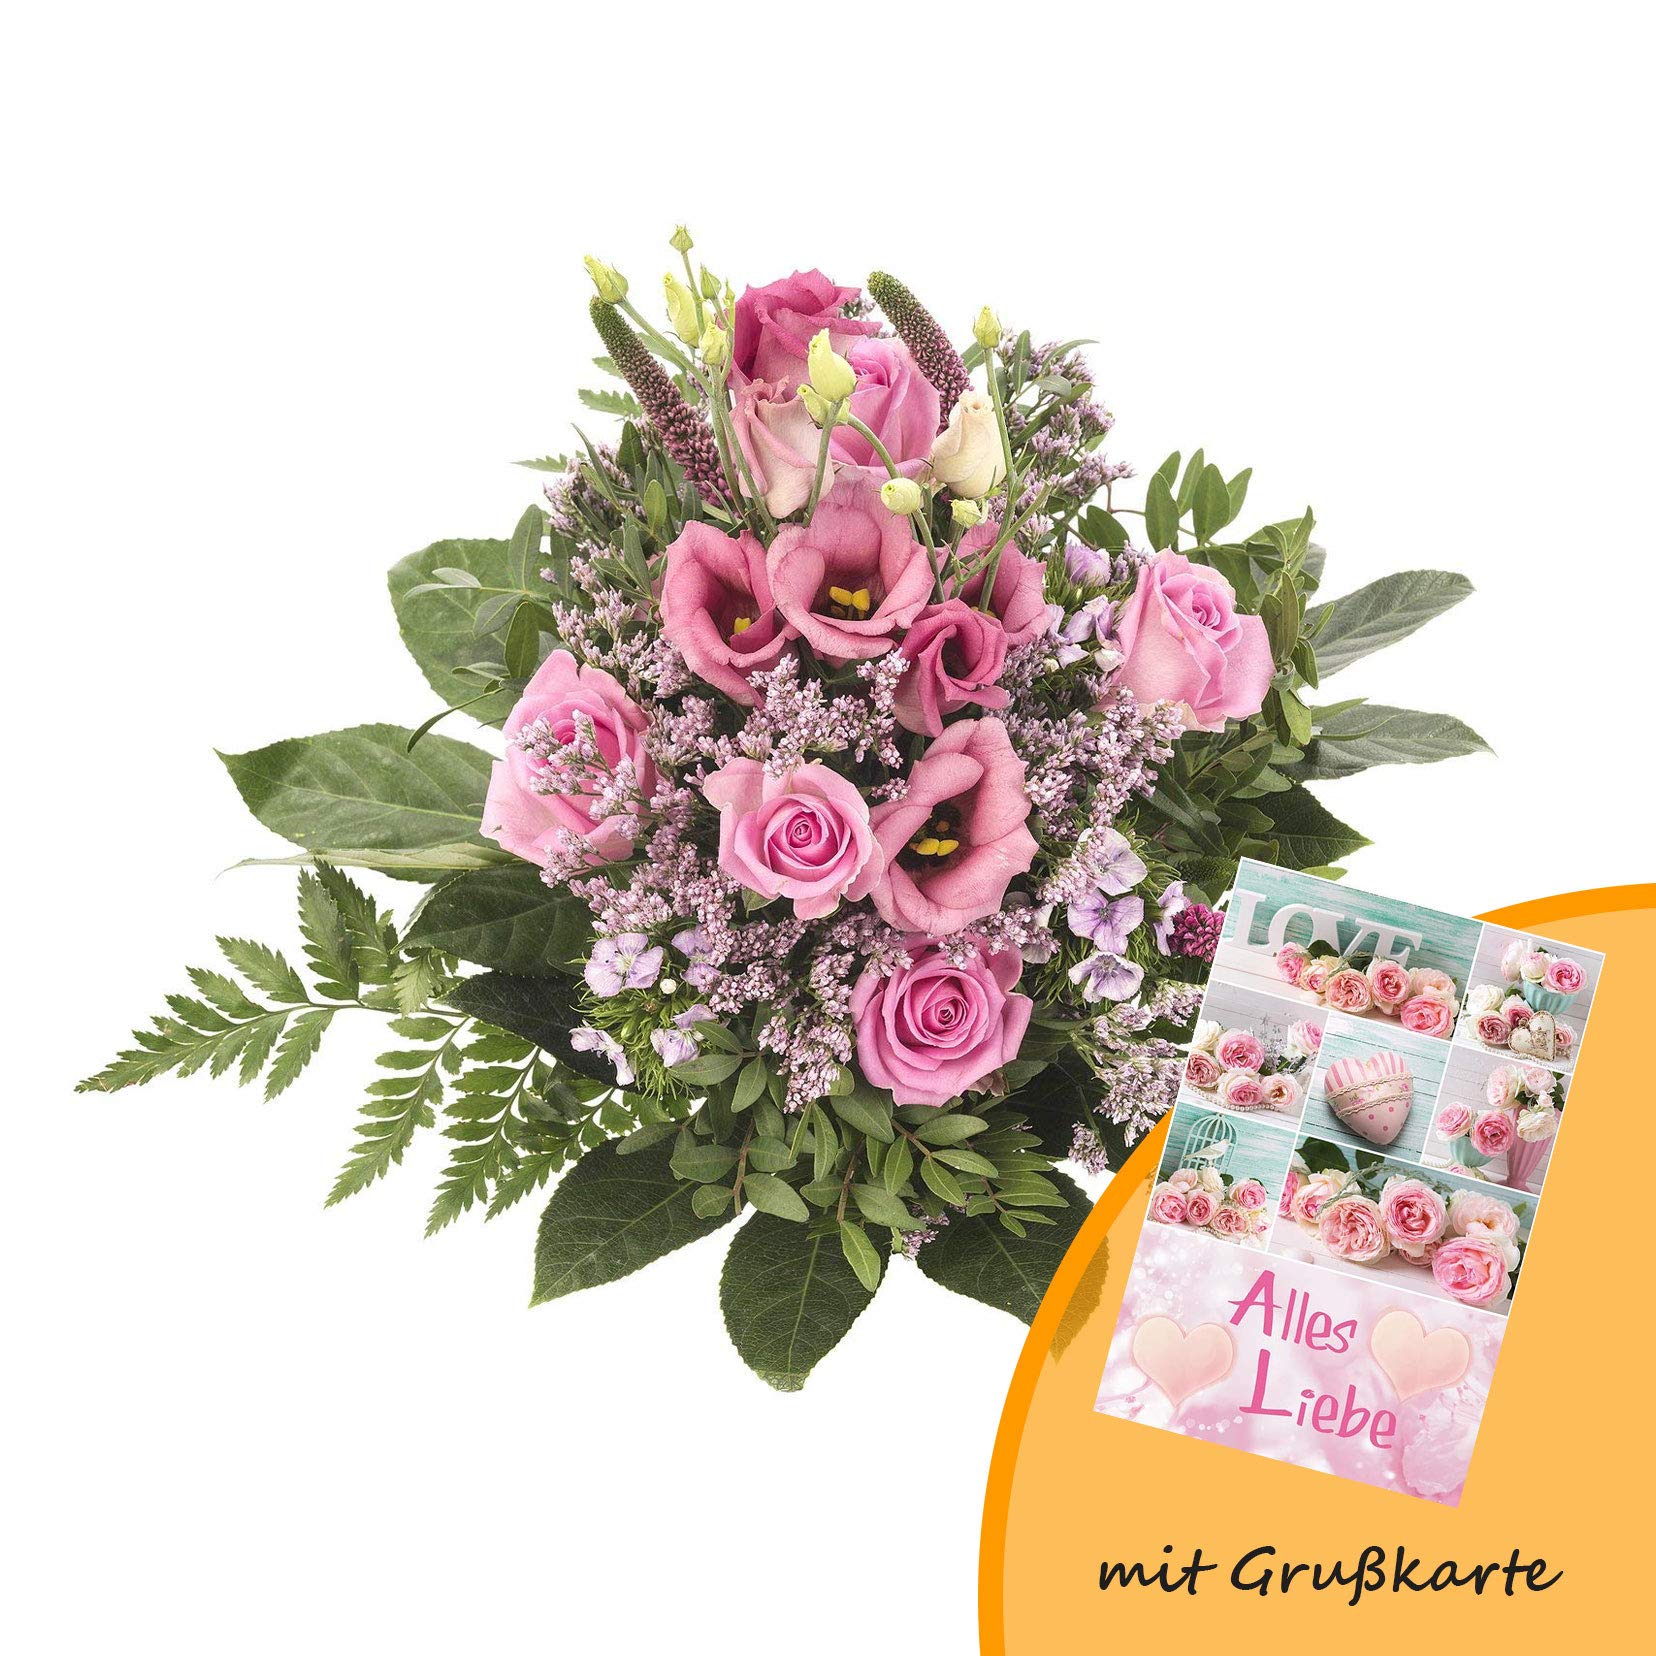 Dominik Blumen und Pflanzen, Blumenstrauß, Blütenzauber, mehrfarbig, 40 x 25 x 25 cm und Grußkarte "Alles Liebe"